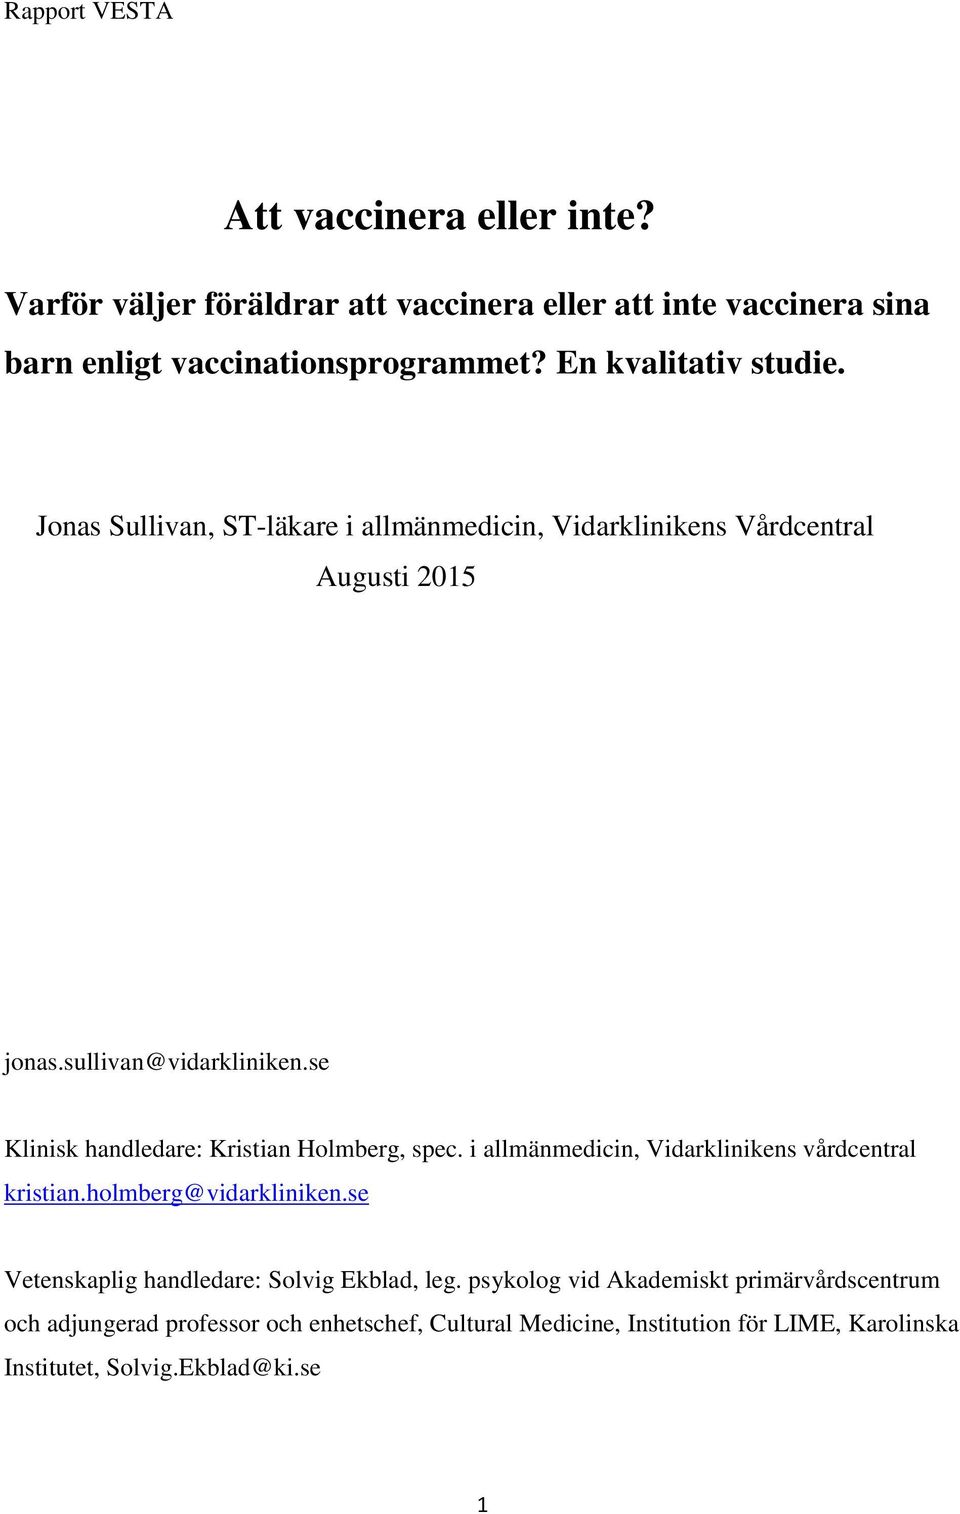 se Klinisk handledare: Kristian Holmberg, spec. i allmänmedicin, Vidarklinikens vårdcentral kristian.holmberg@vidarkliniken.